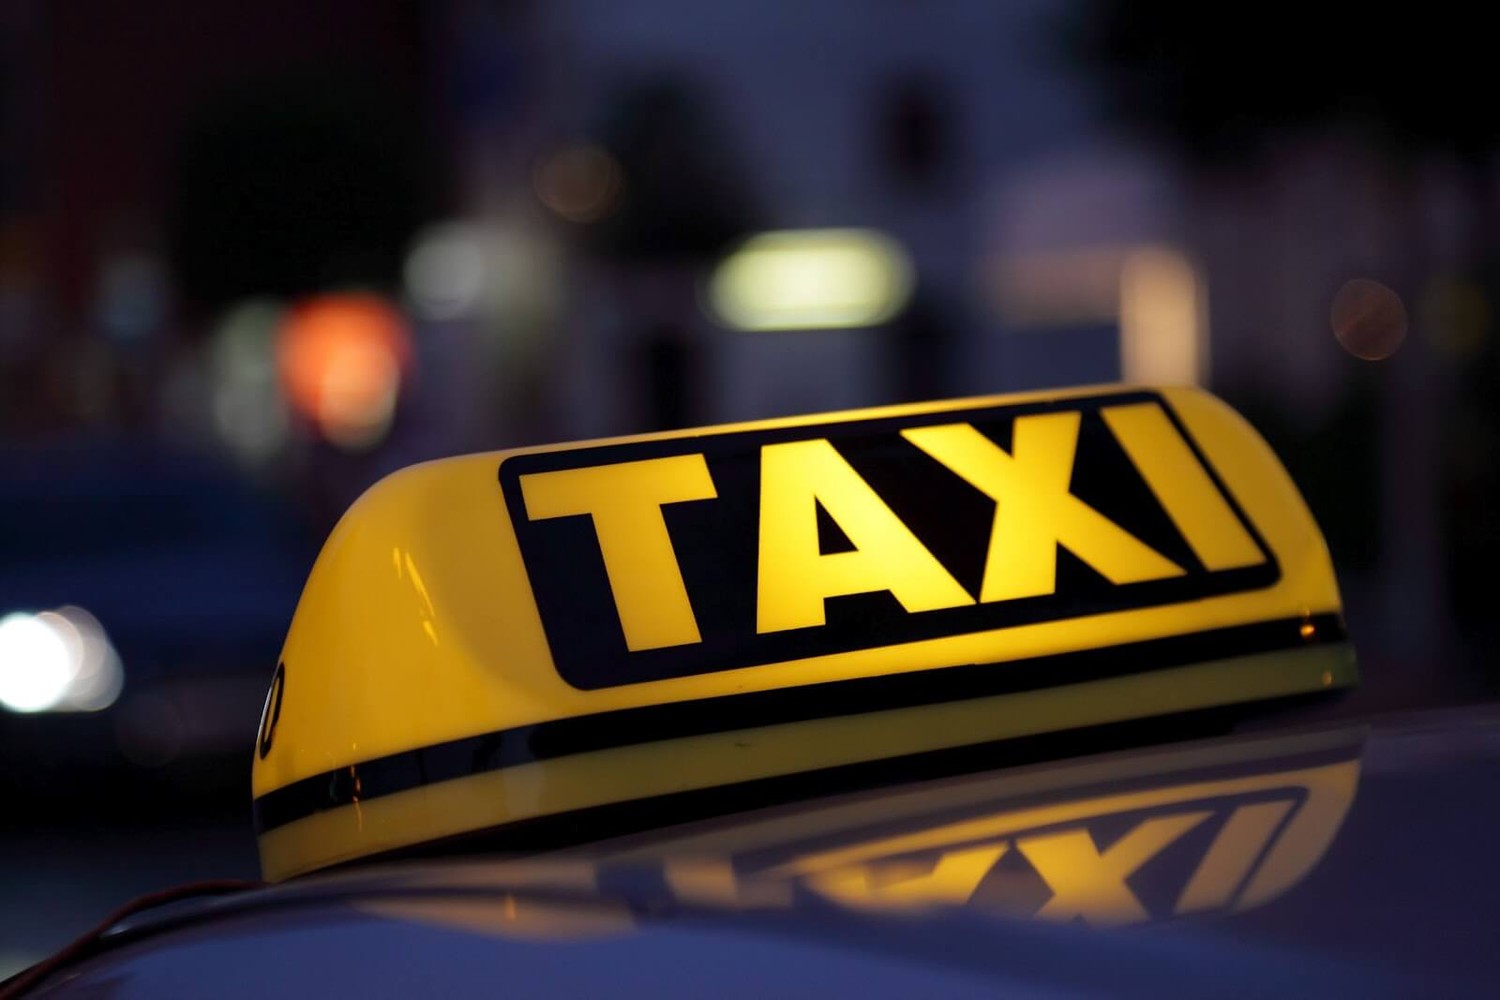 Производство и размещение рекламы на такси, преимущества, особенности